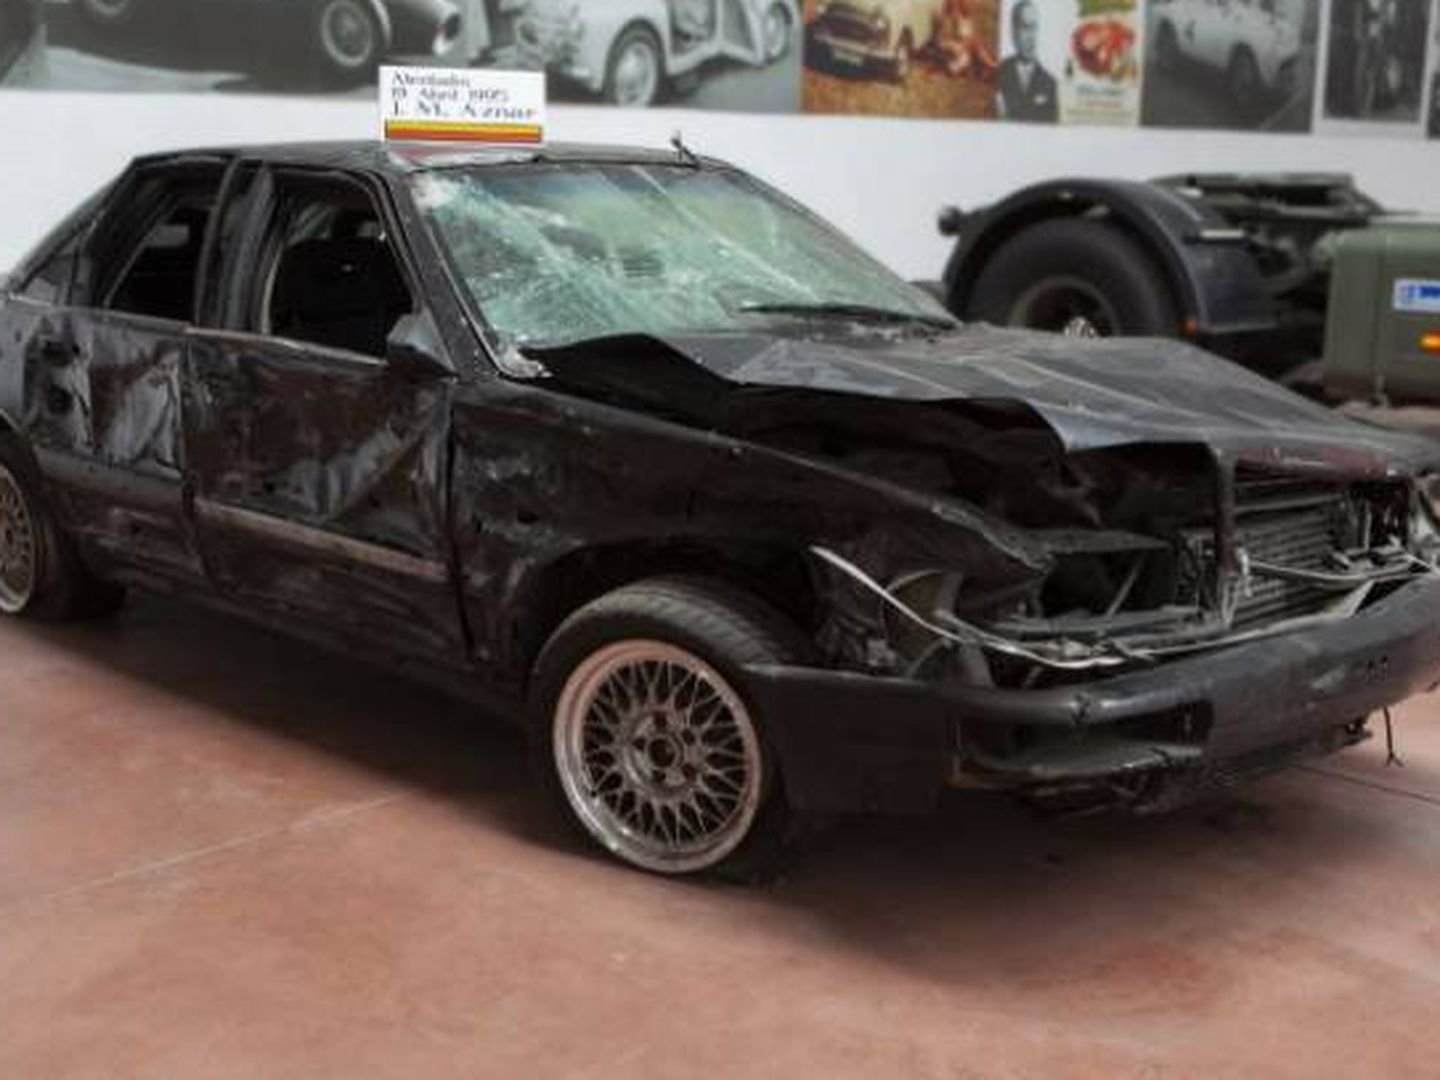 Audi A8, el vehículo siniestrado en el que sufrió el atentado José María Aznar el 19 de abril de 1995.